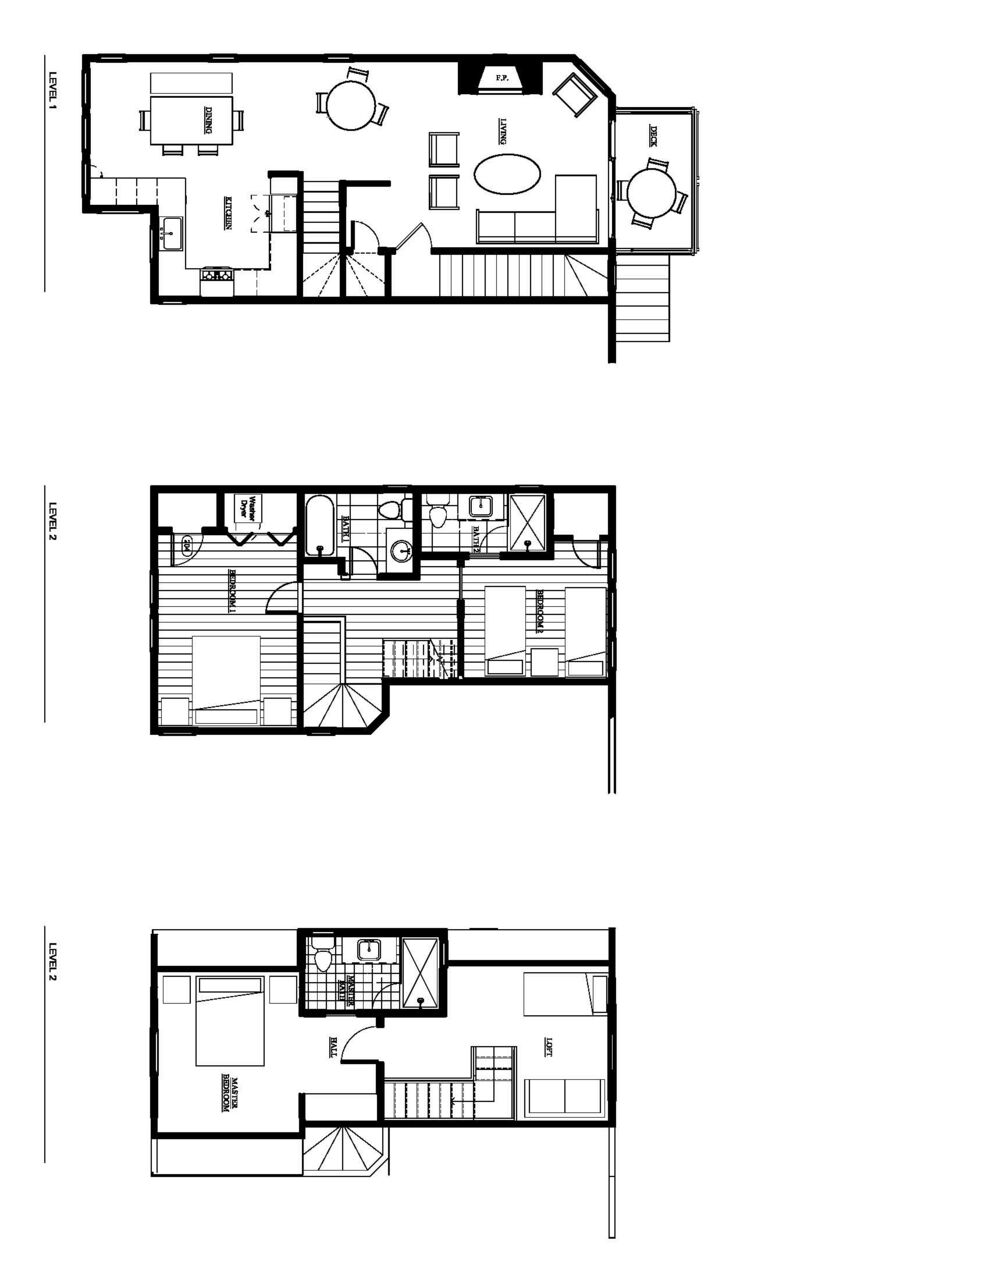 Rooms plan